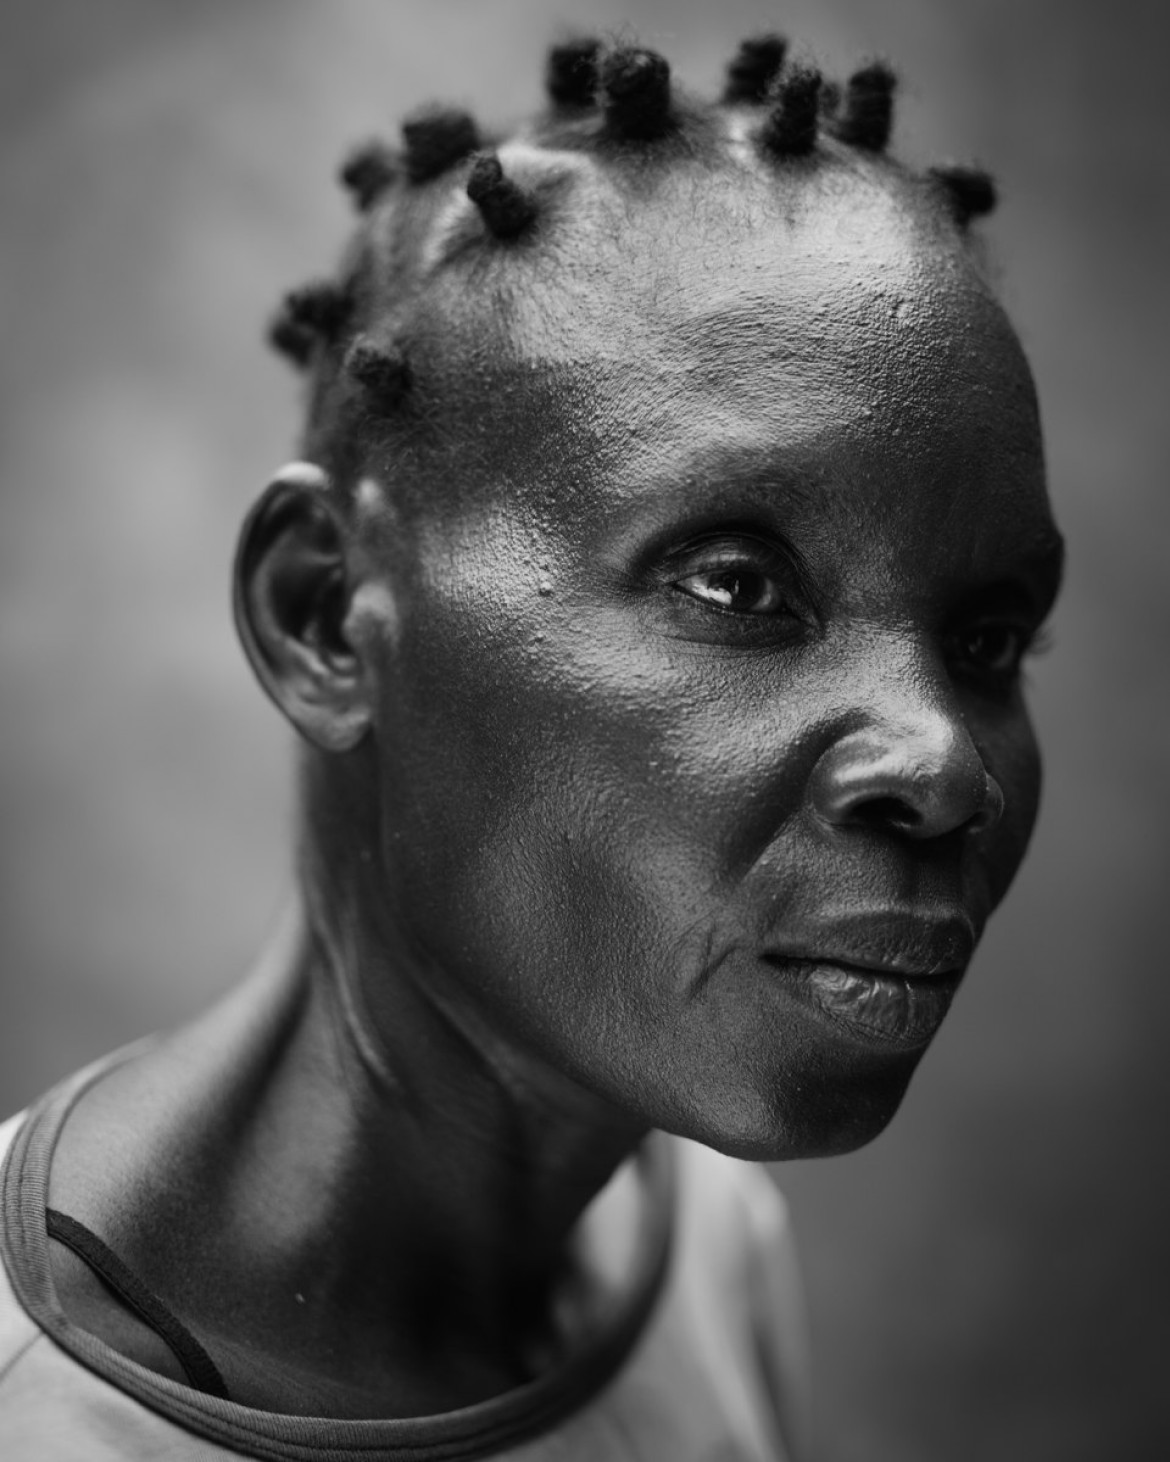 fot. Robin Hammond, "Praying for a miracle", 2. miejsce w kategorii People / Singles.

41-letnia Afrykanka Hellen cierpi na zaburzenia psychiczne. W krajach rozwijających się 80-procent chorych psychicznie nie otrzymuje żadnej pomocy.